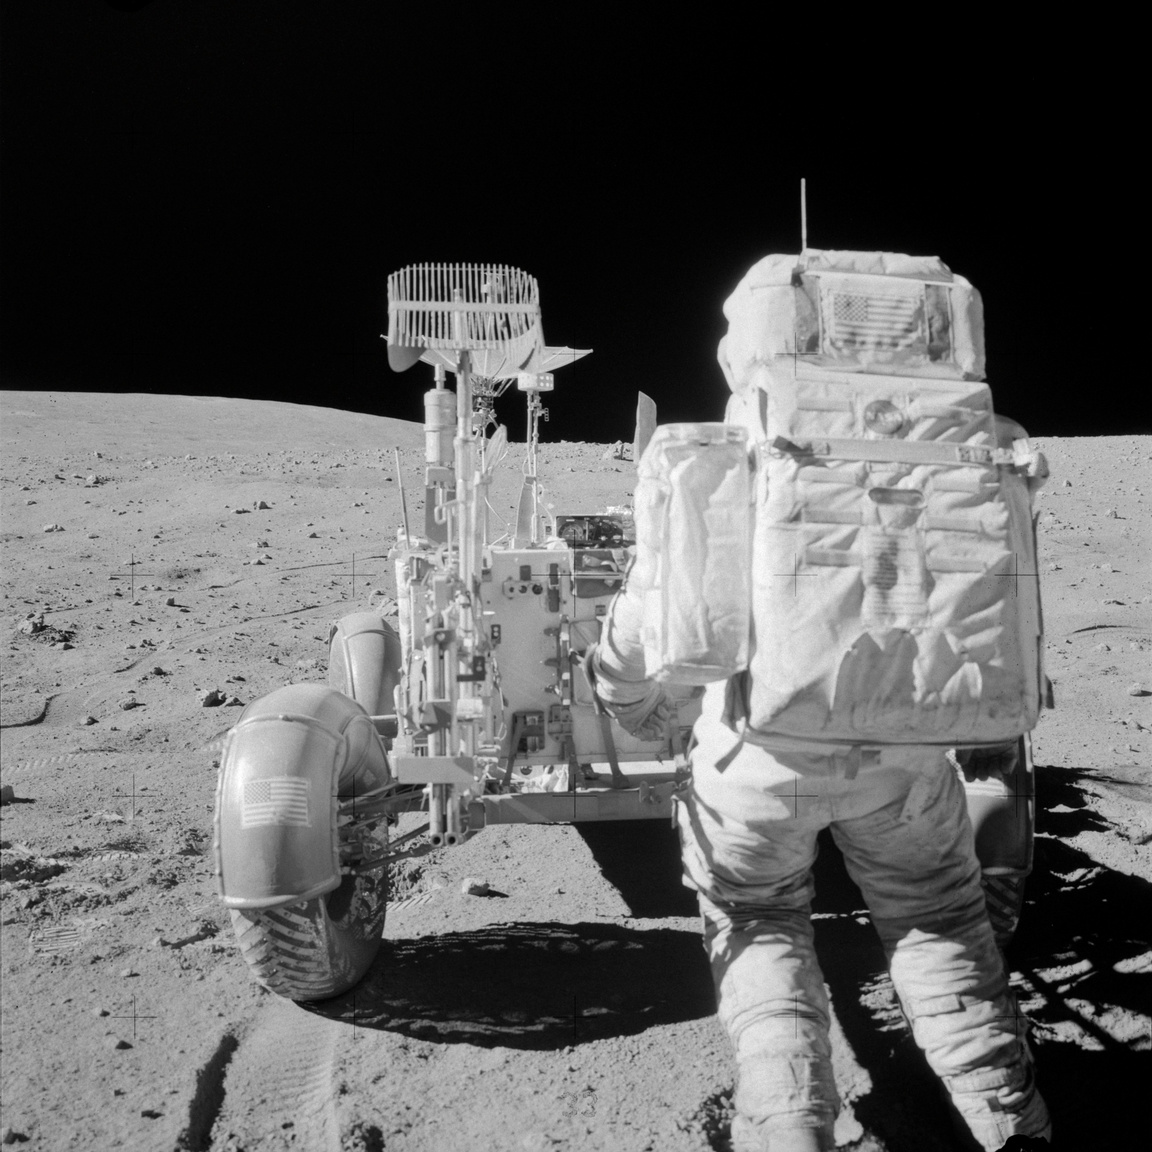 John W. Young éppen eszközöket pakol a holdjáró kéziszerszámtartójába az Apollo-16 misszió második űrsétáján. Eredetileg az Apollo-16-on akarták volna először használni a holdjárót, de a program újratervezése végett az Apollo-15 asztronautái autóztak először az űrben. Az Apollo-16 holdjárójával gondok voltak, az összehajtogatott kerekek nem álltak automatikusan pozícióba és a hátsó kerekek kormányzása sem akart működni.
                        